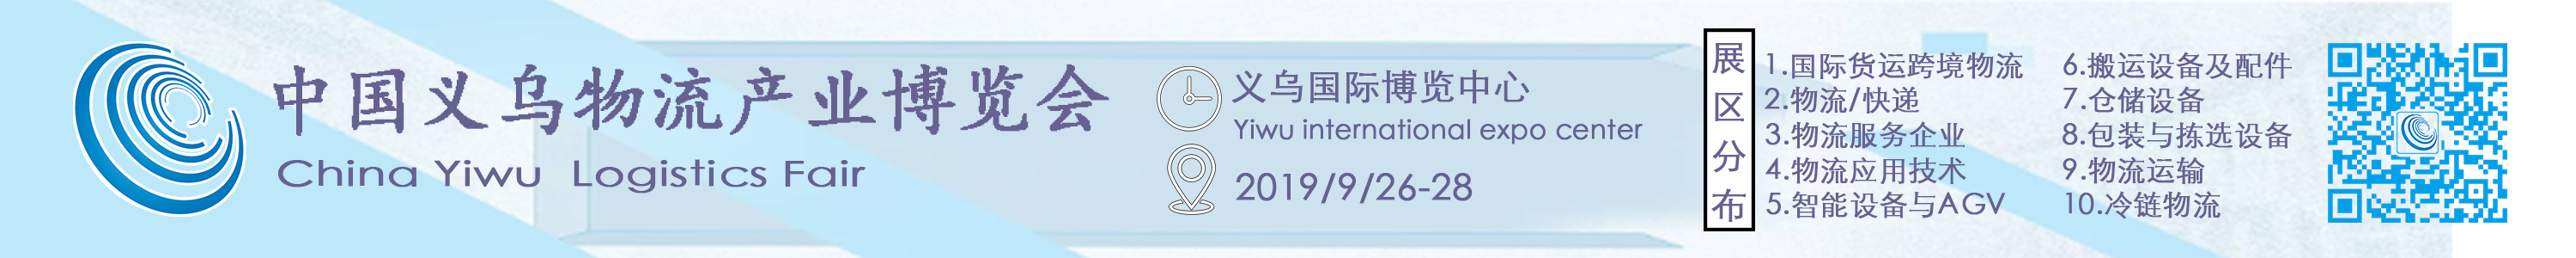 2019第四届中国义乌物流产业博览会